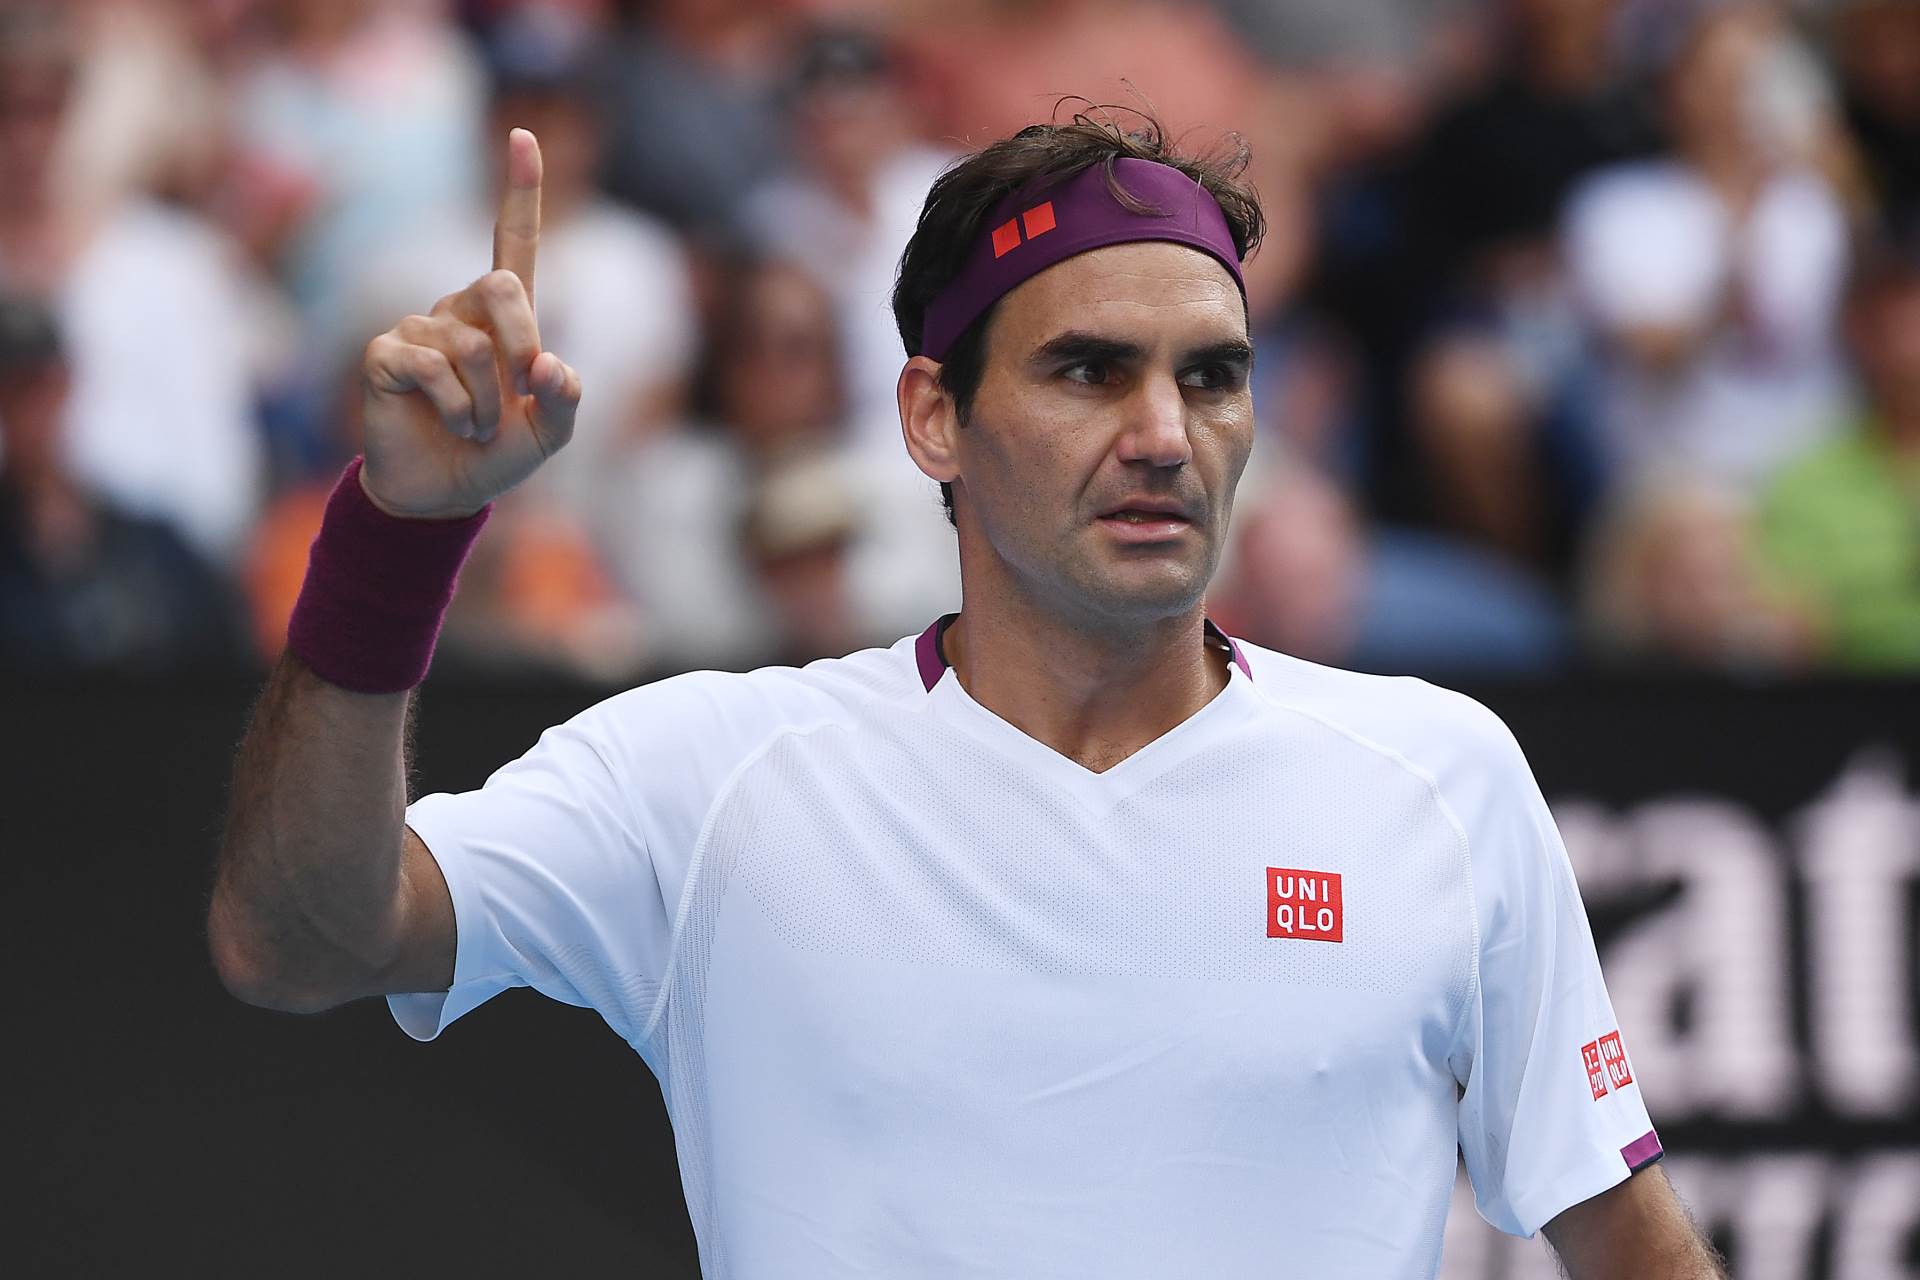  Federer se nešto zapitao... I izazvao LAVINU komentara! Koji je vaš? 